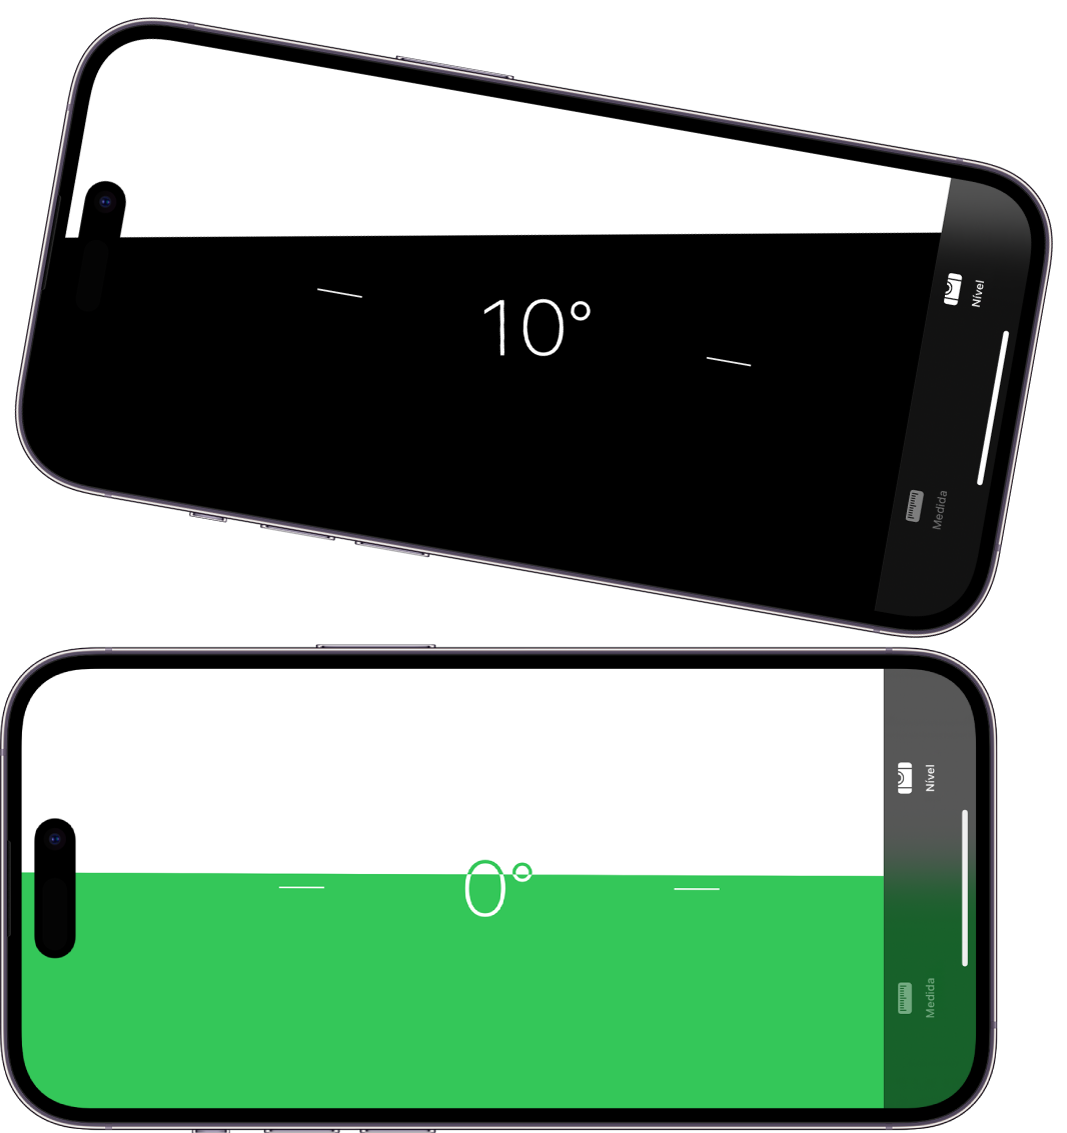 A tela de nível no app Medida. Na parte superior, o iPhone está inclinado em um ângulo de 10 graus; na parte inferior, o iPhone está nivelado.